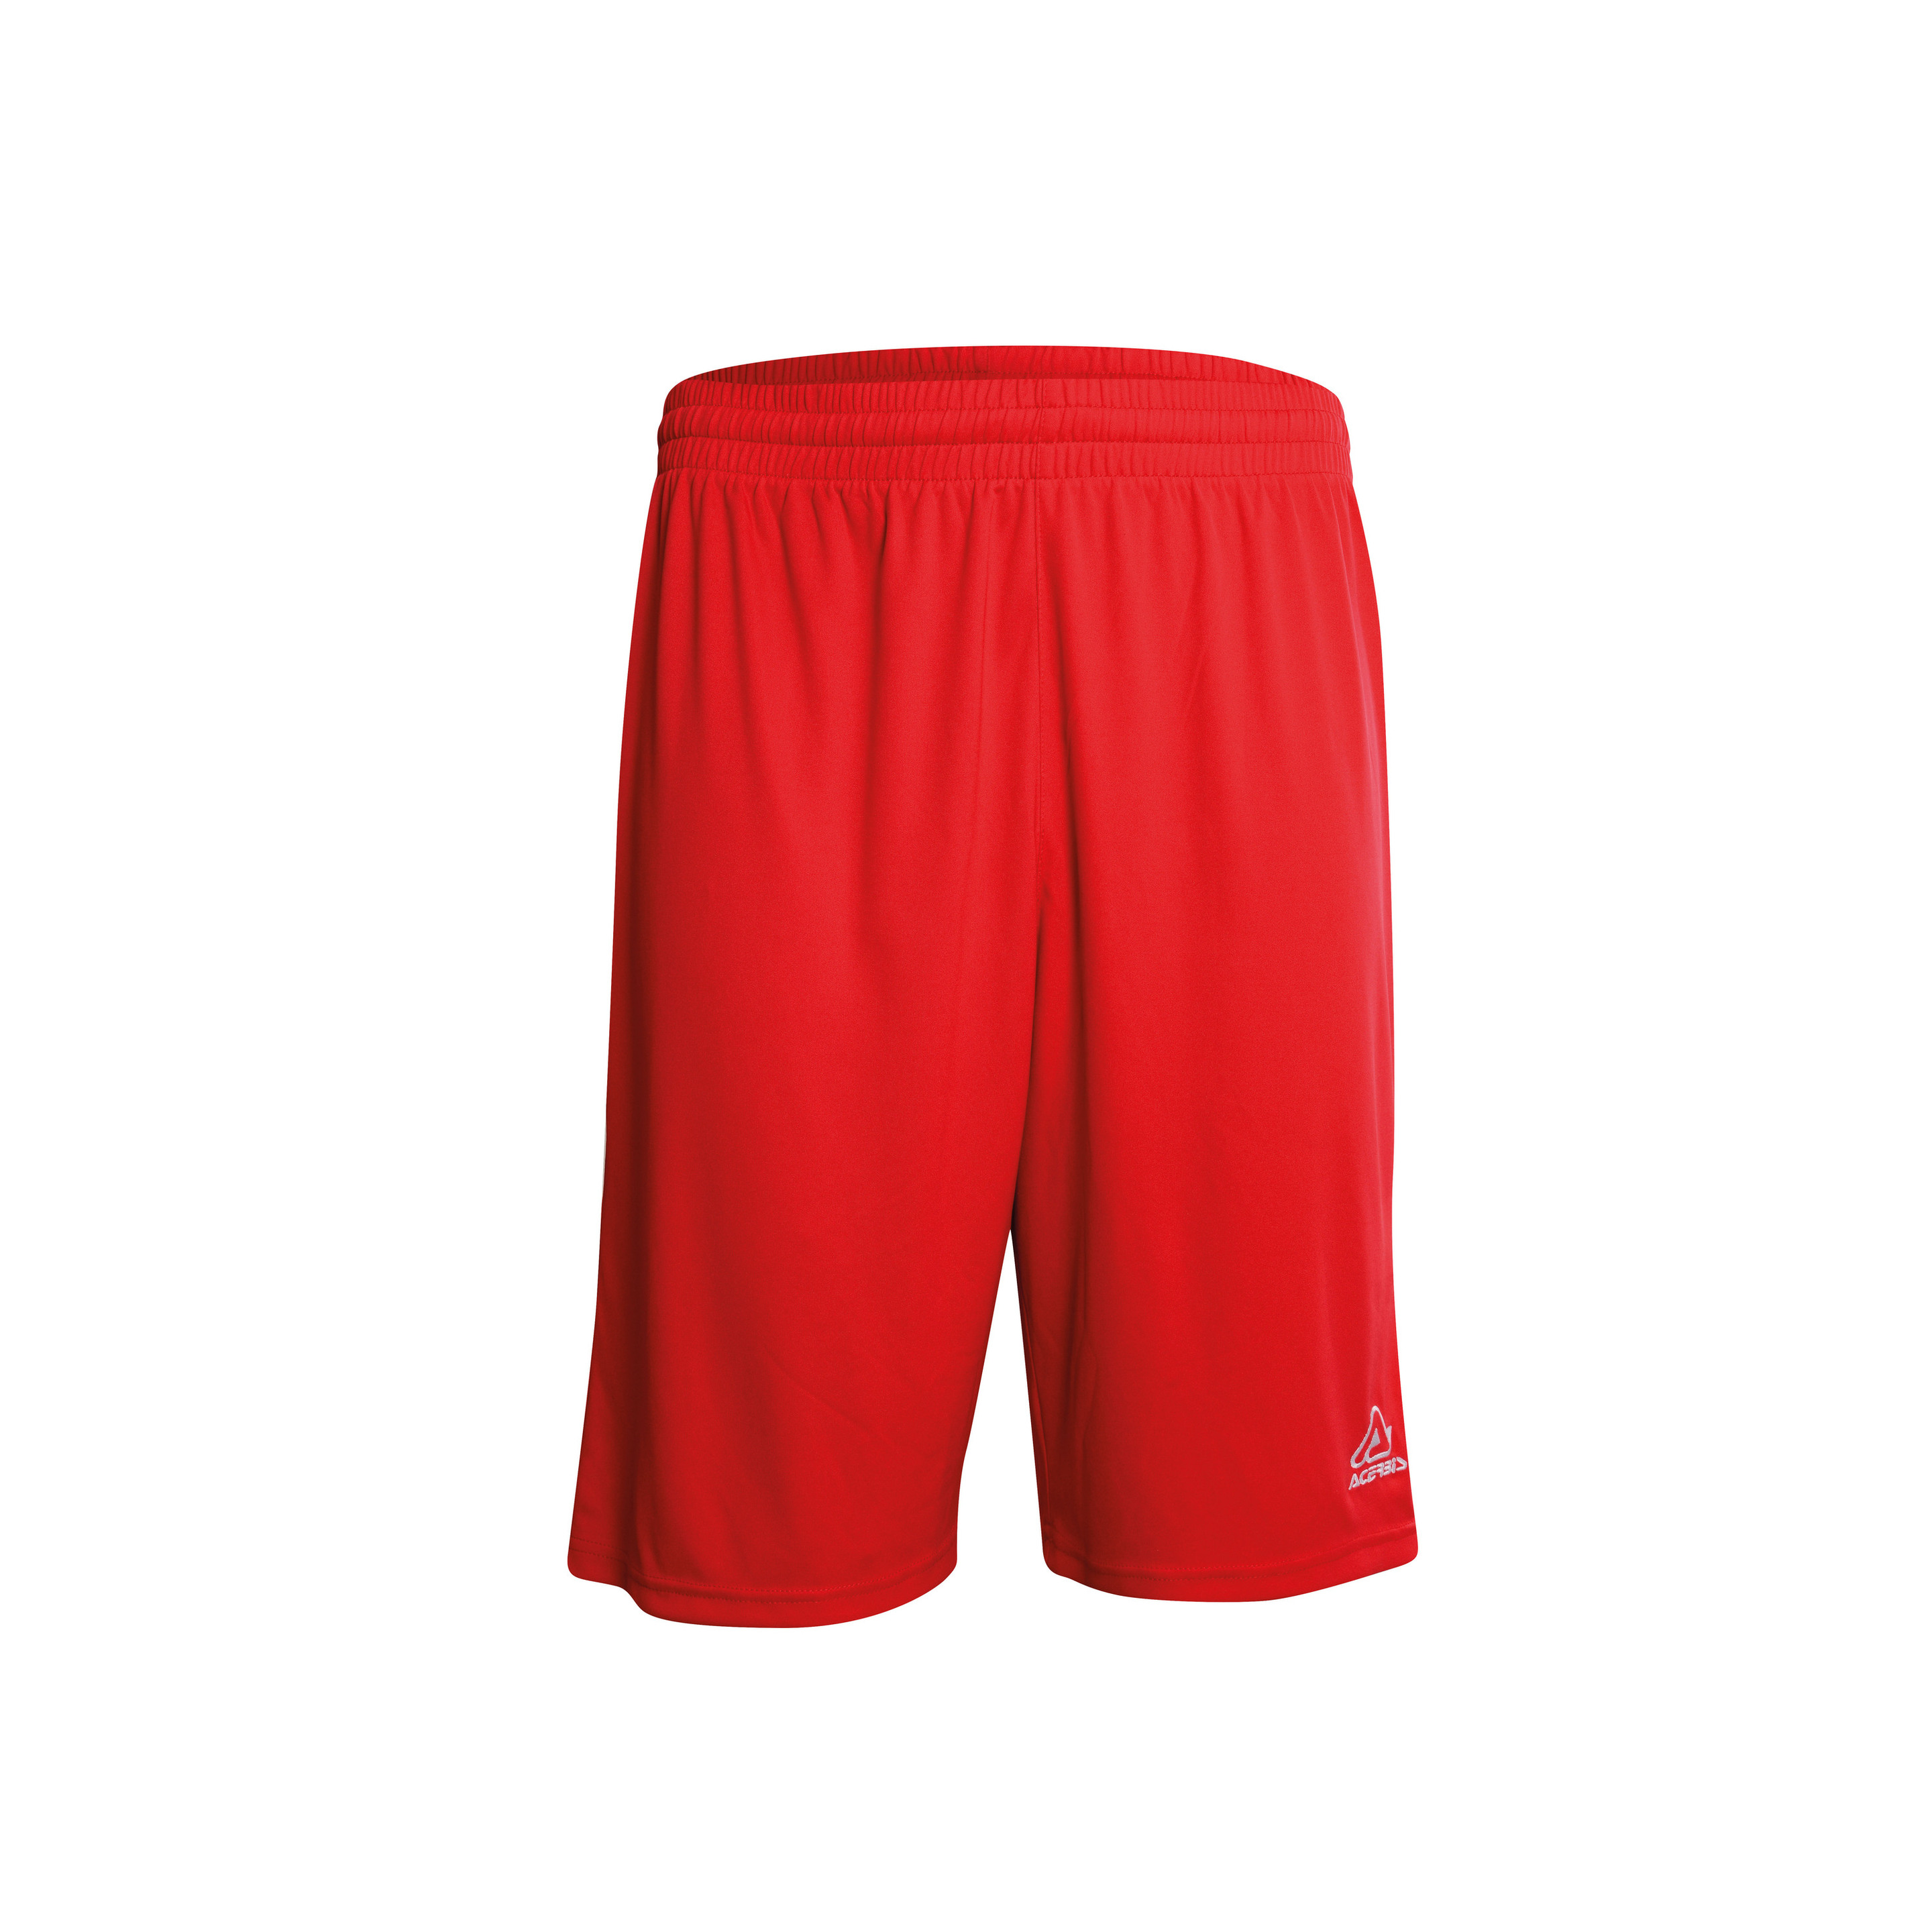 Pantalón Acerbis Magic - Rojo - Pantalón Corto Deportivo  MKP